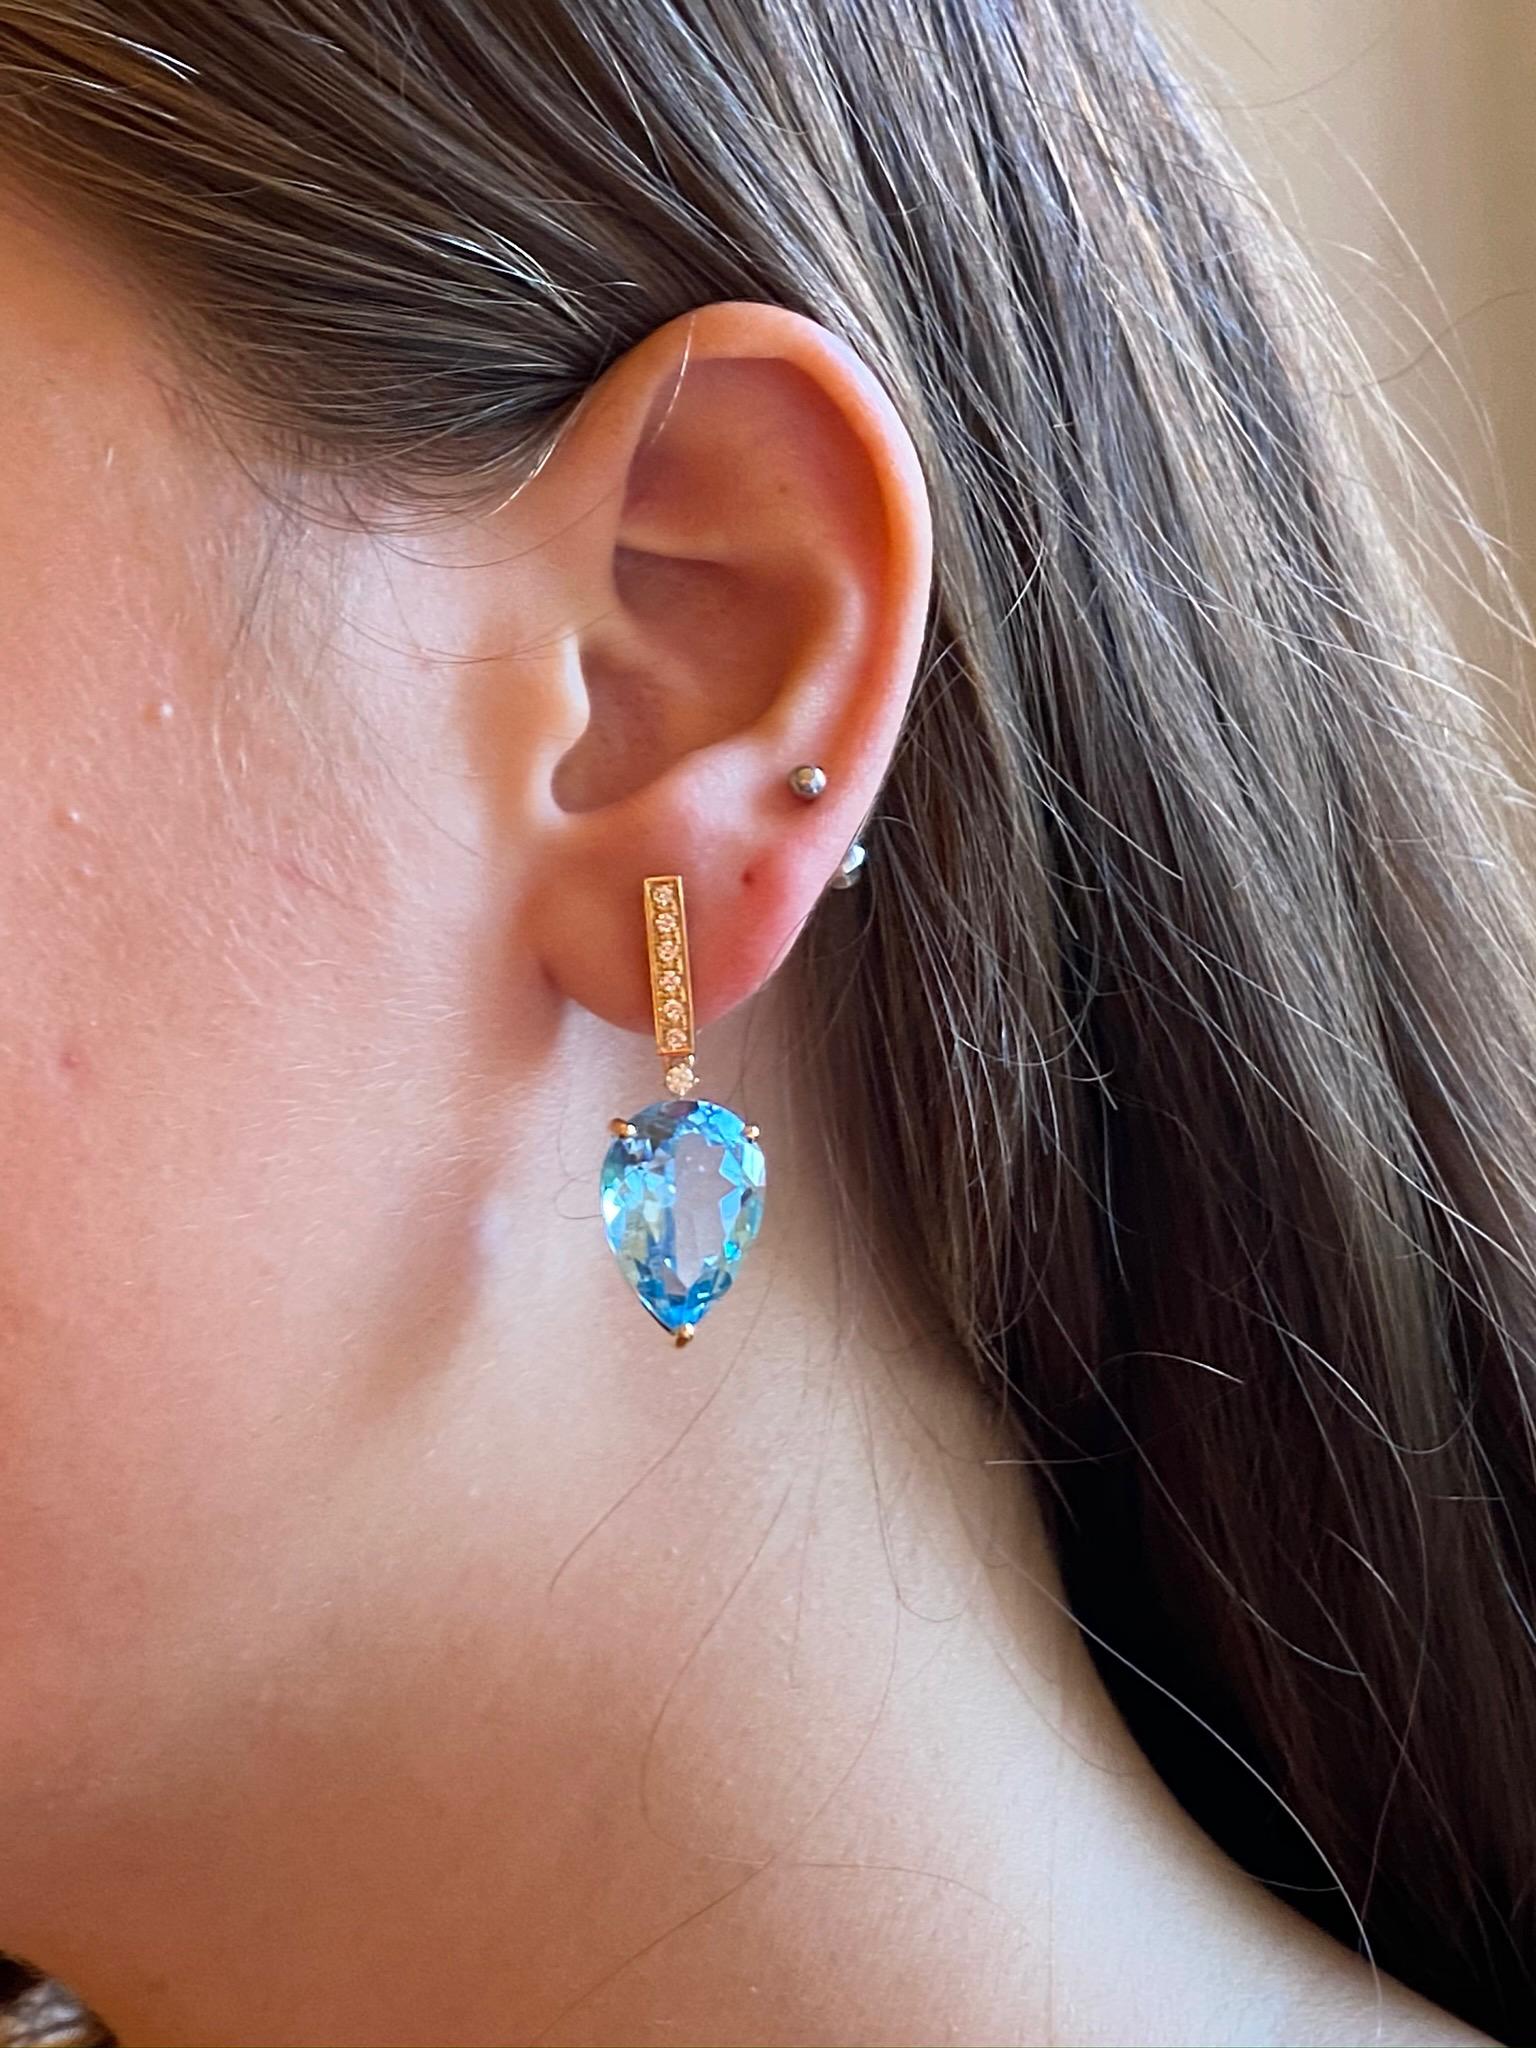 blue topaz earrings costco